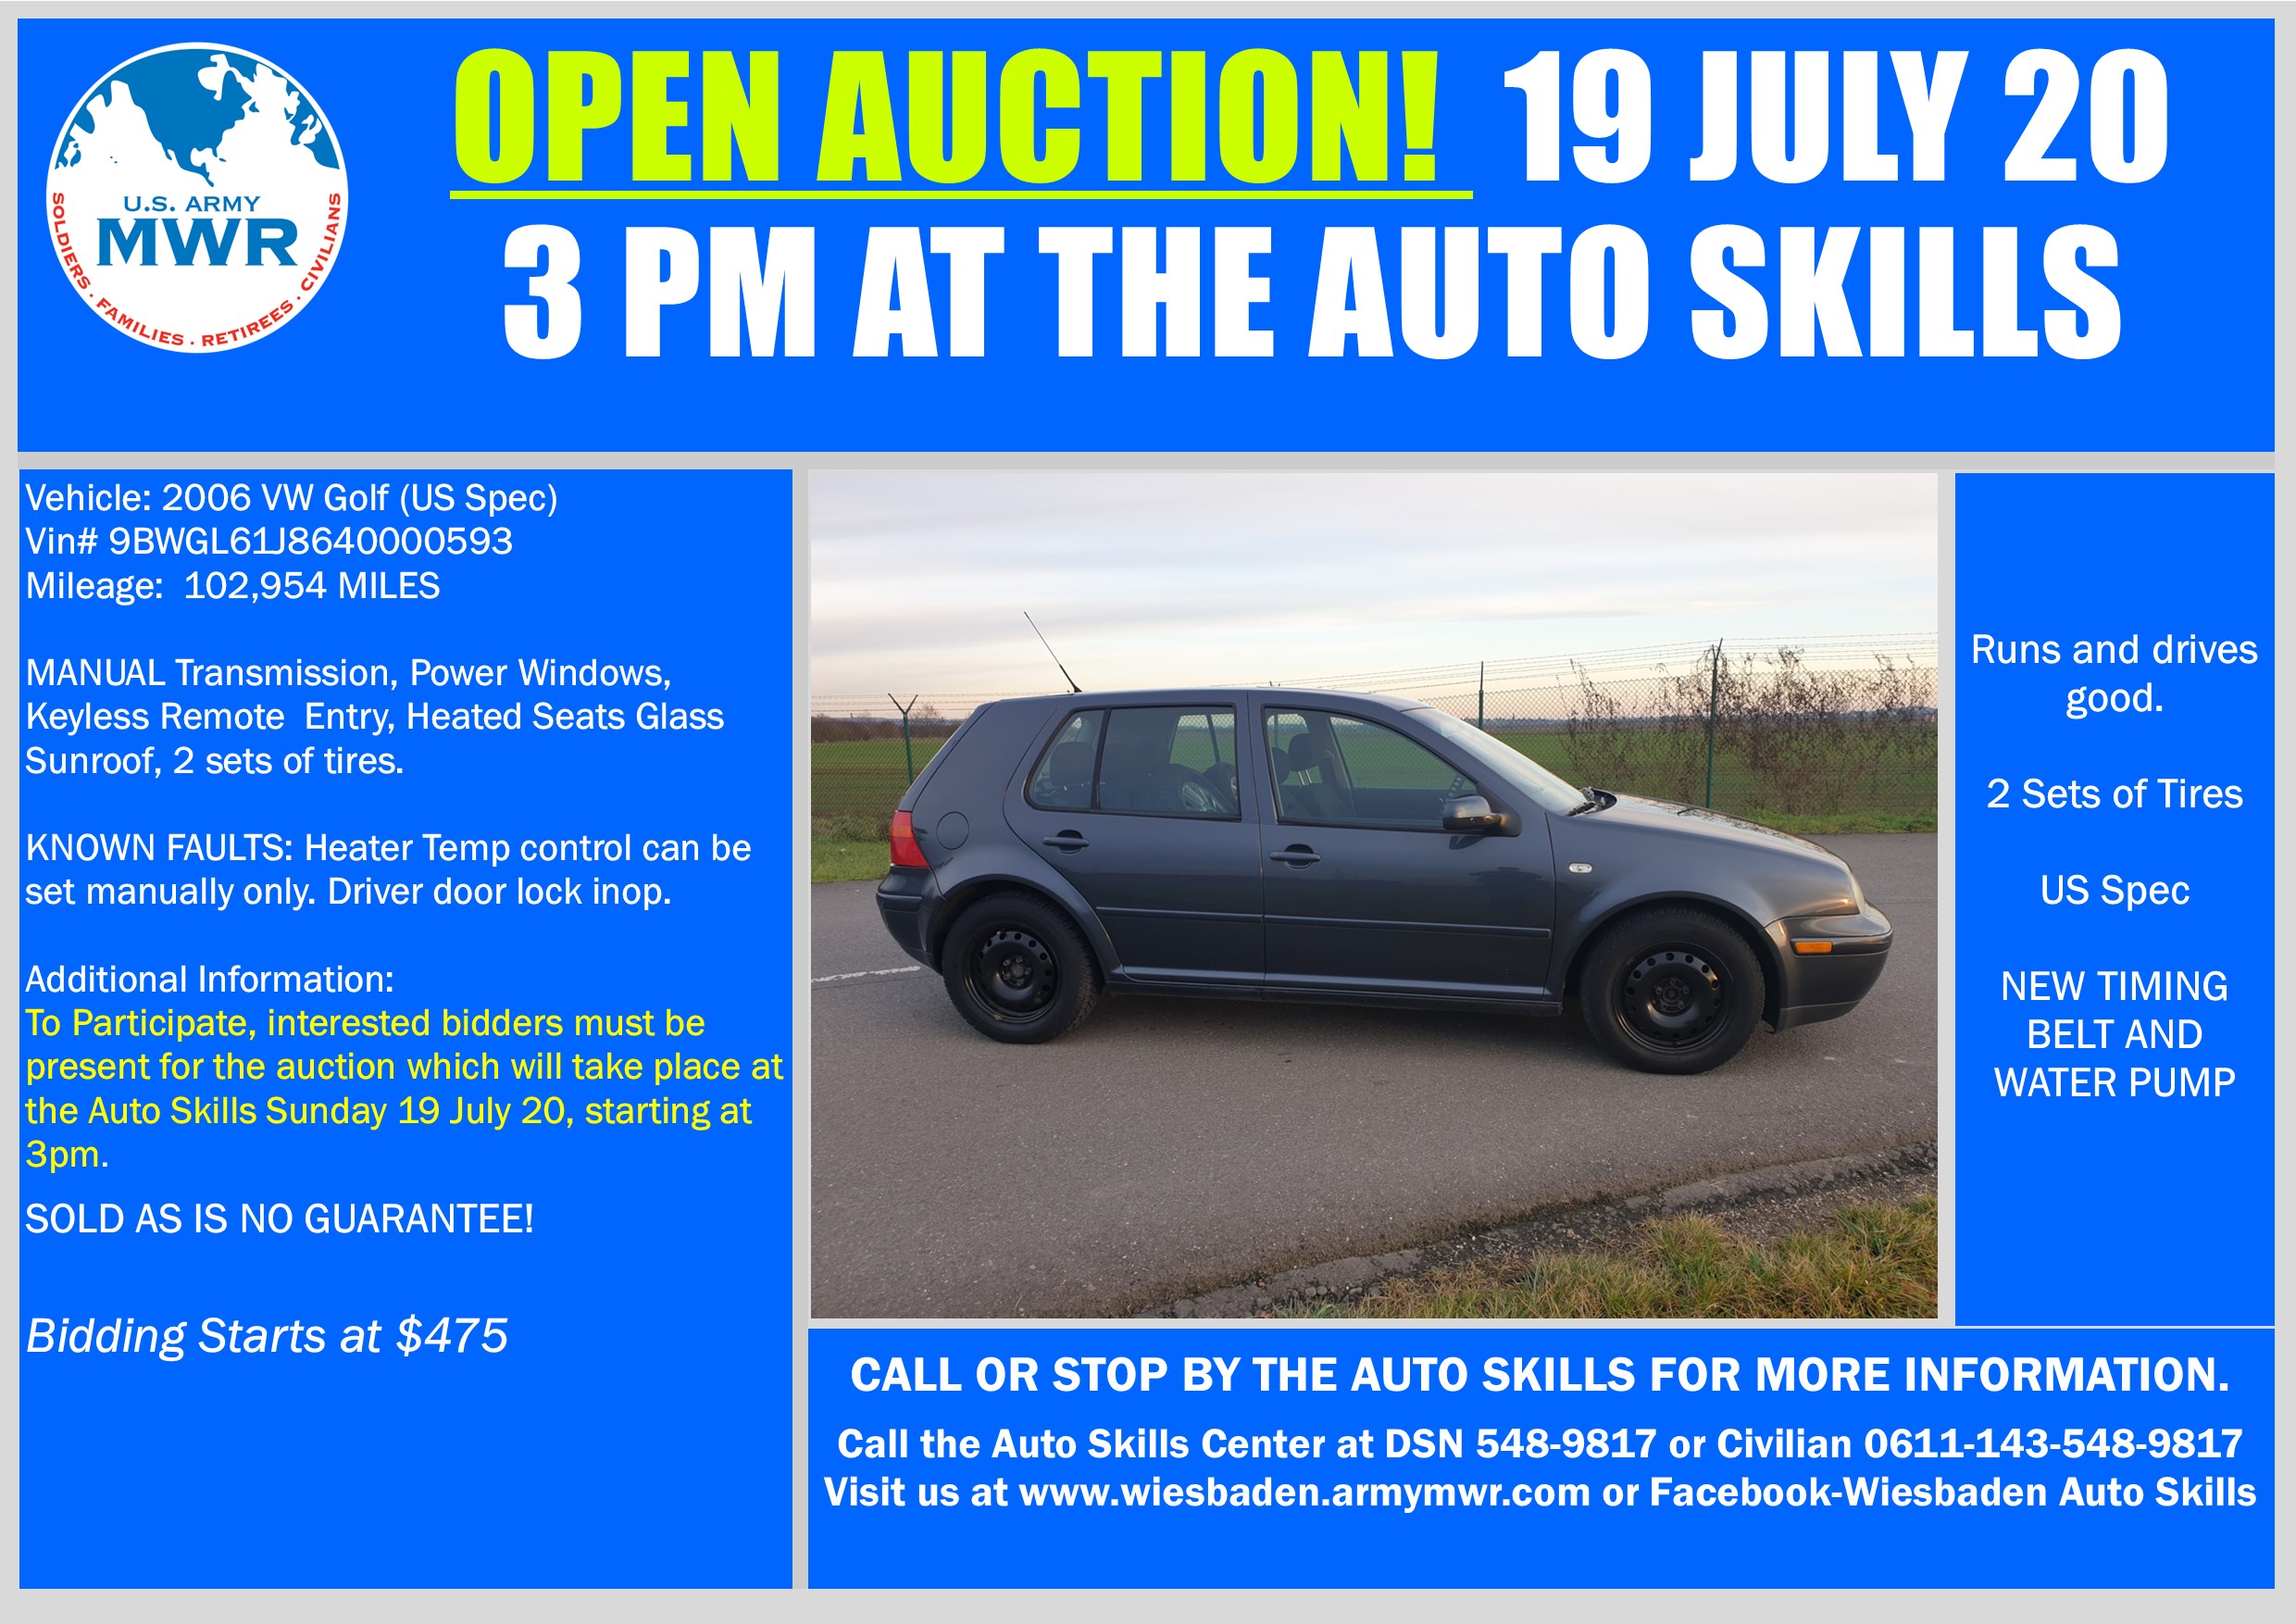 Sale VW Golf Open Auction 19 July  20.jpg